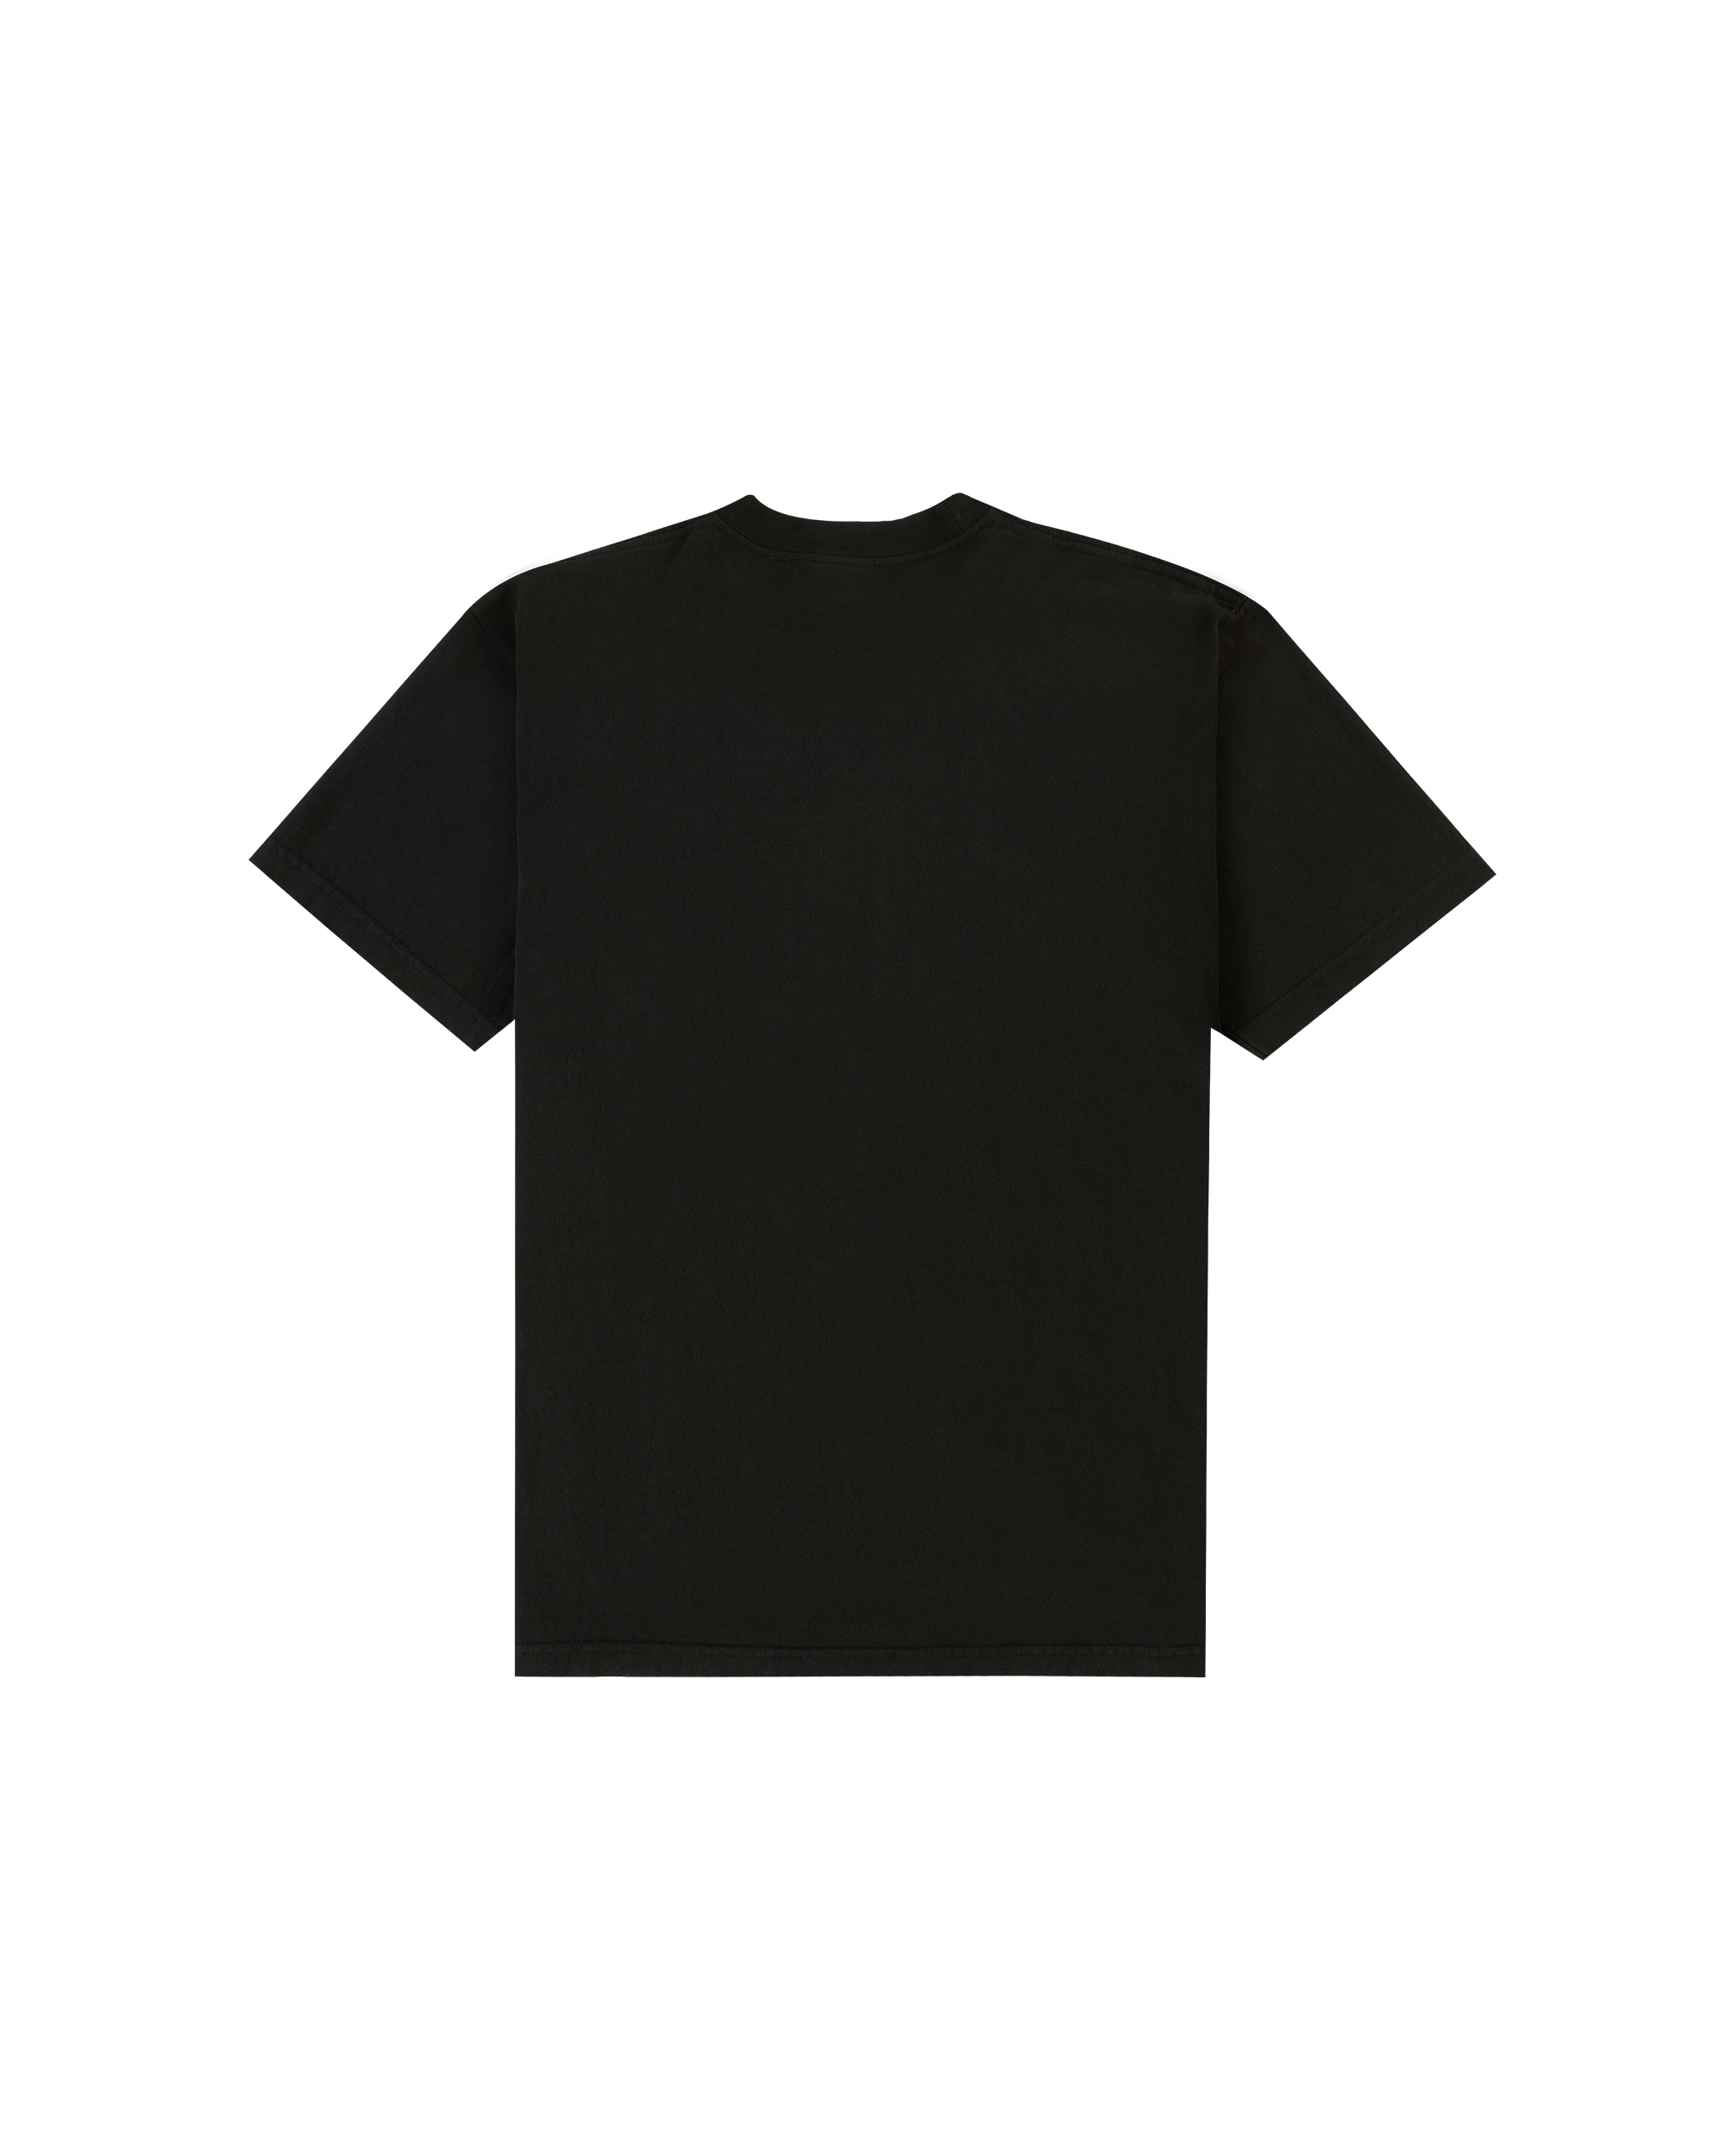 Refurbishing T-shirt - Black